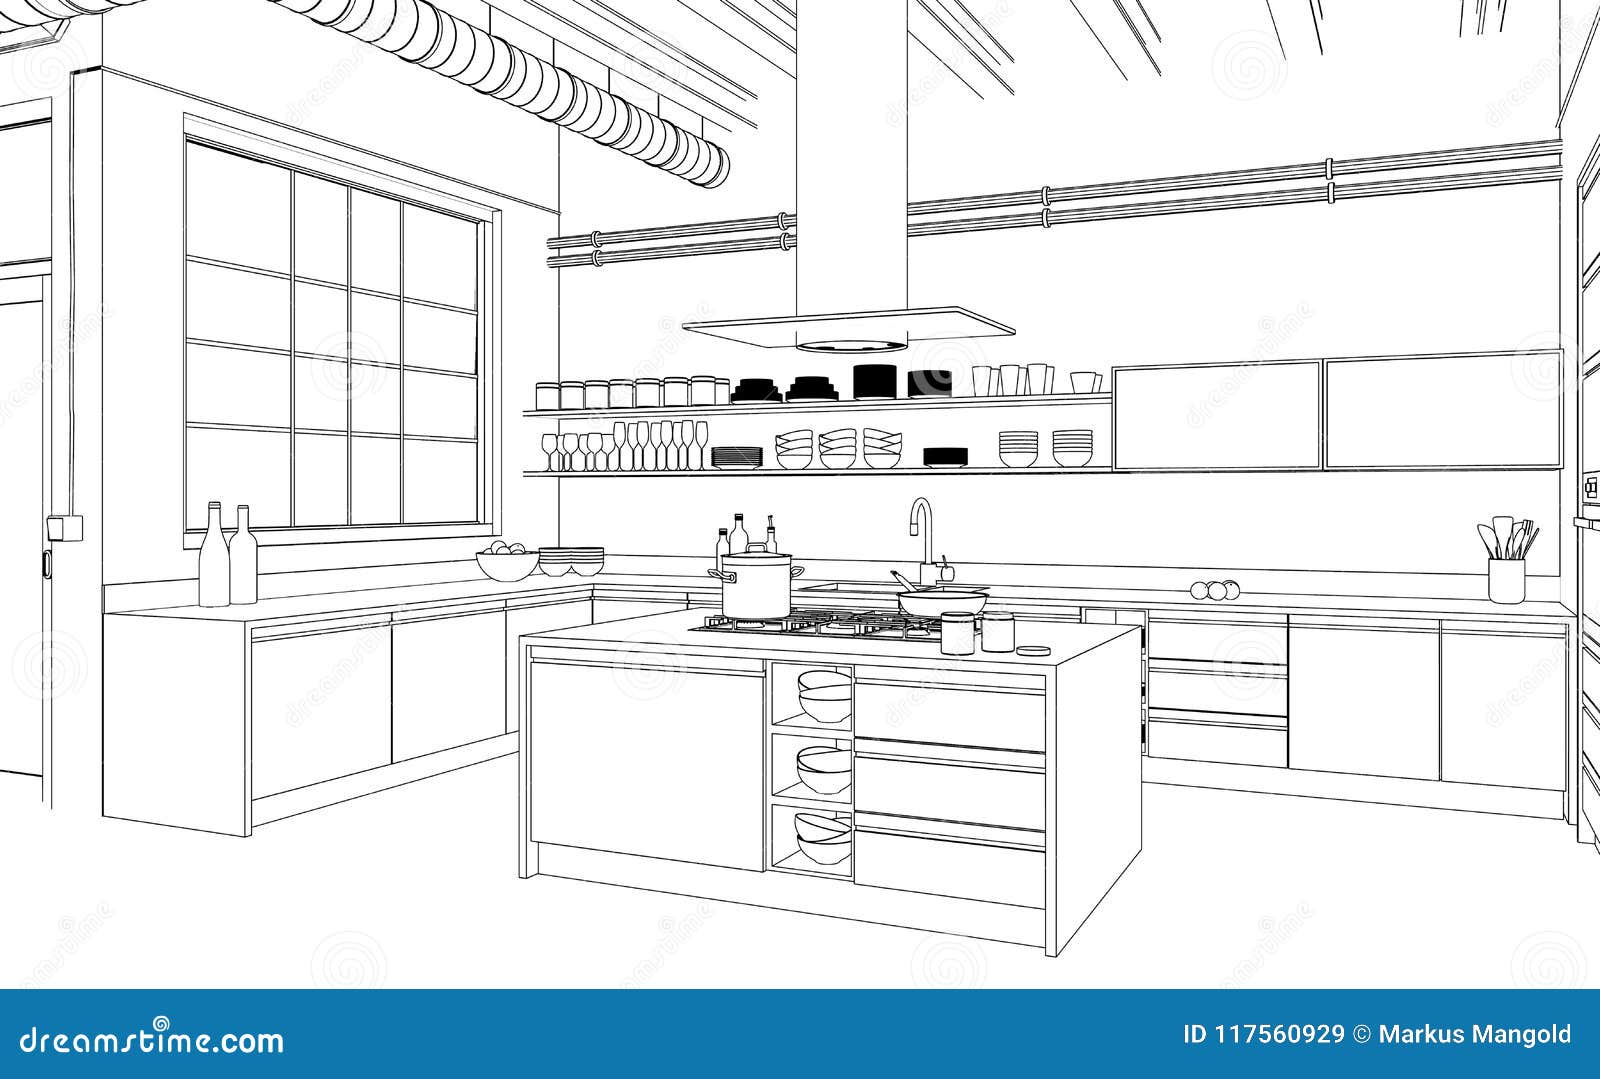 ArtStation - Kitchen Interior Sketch